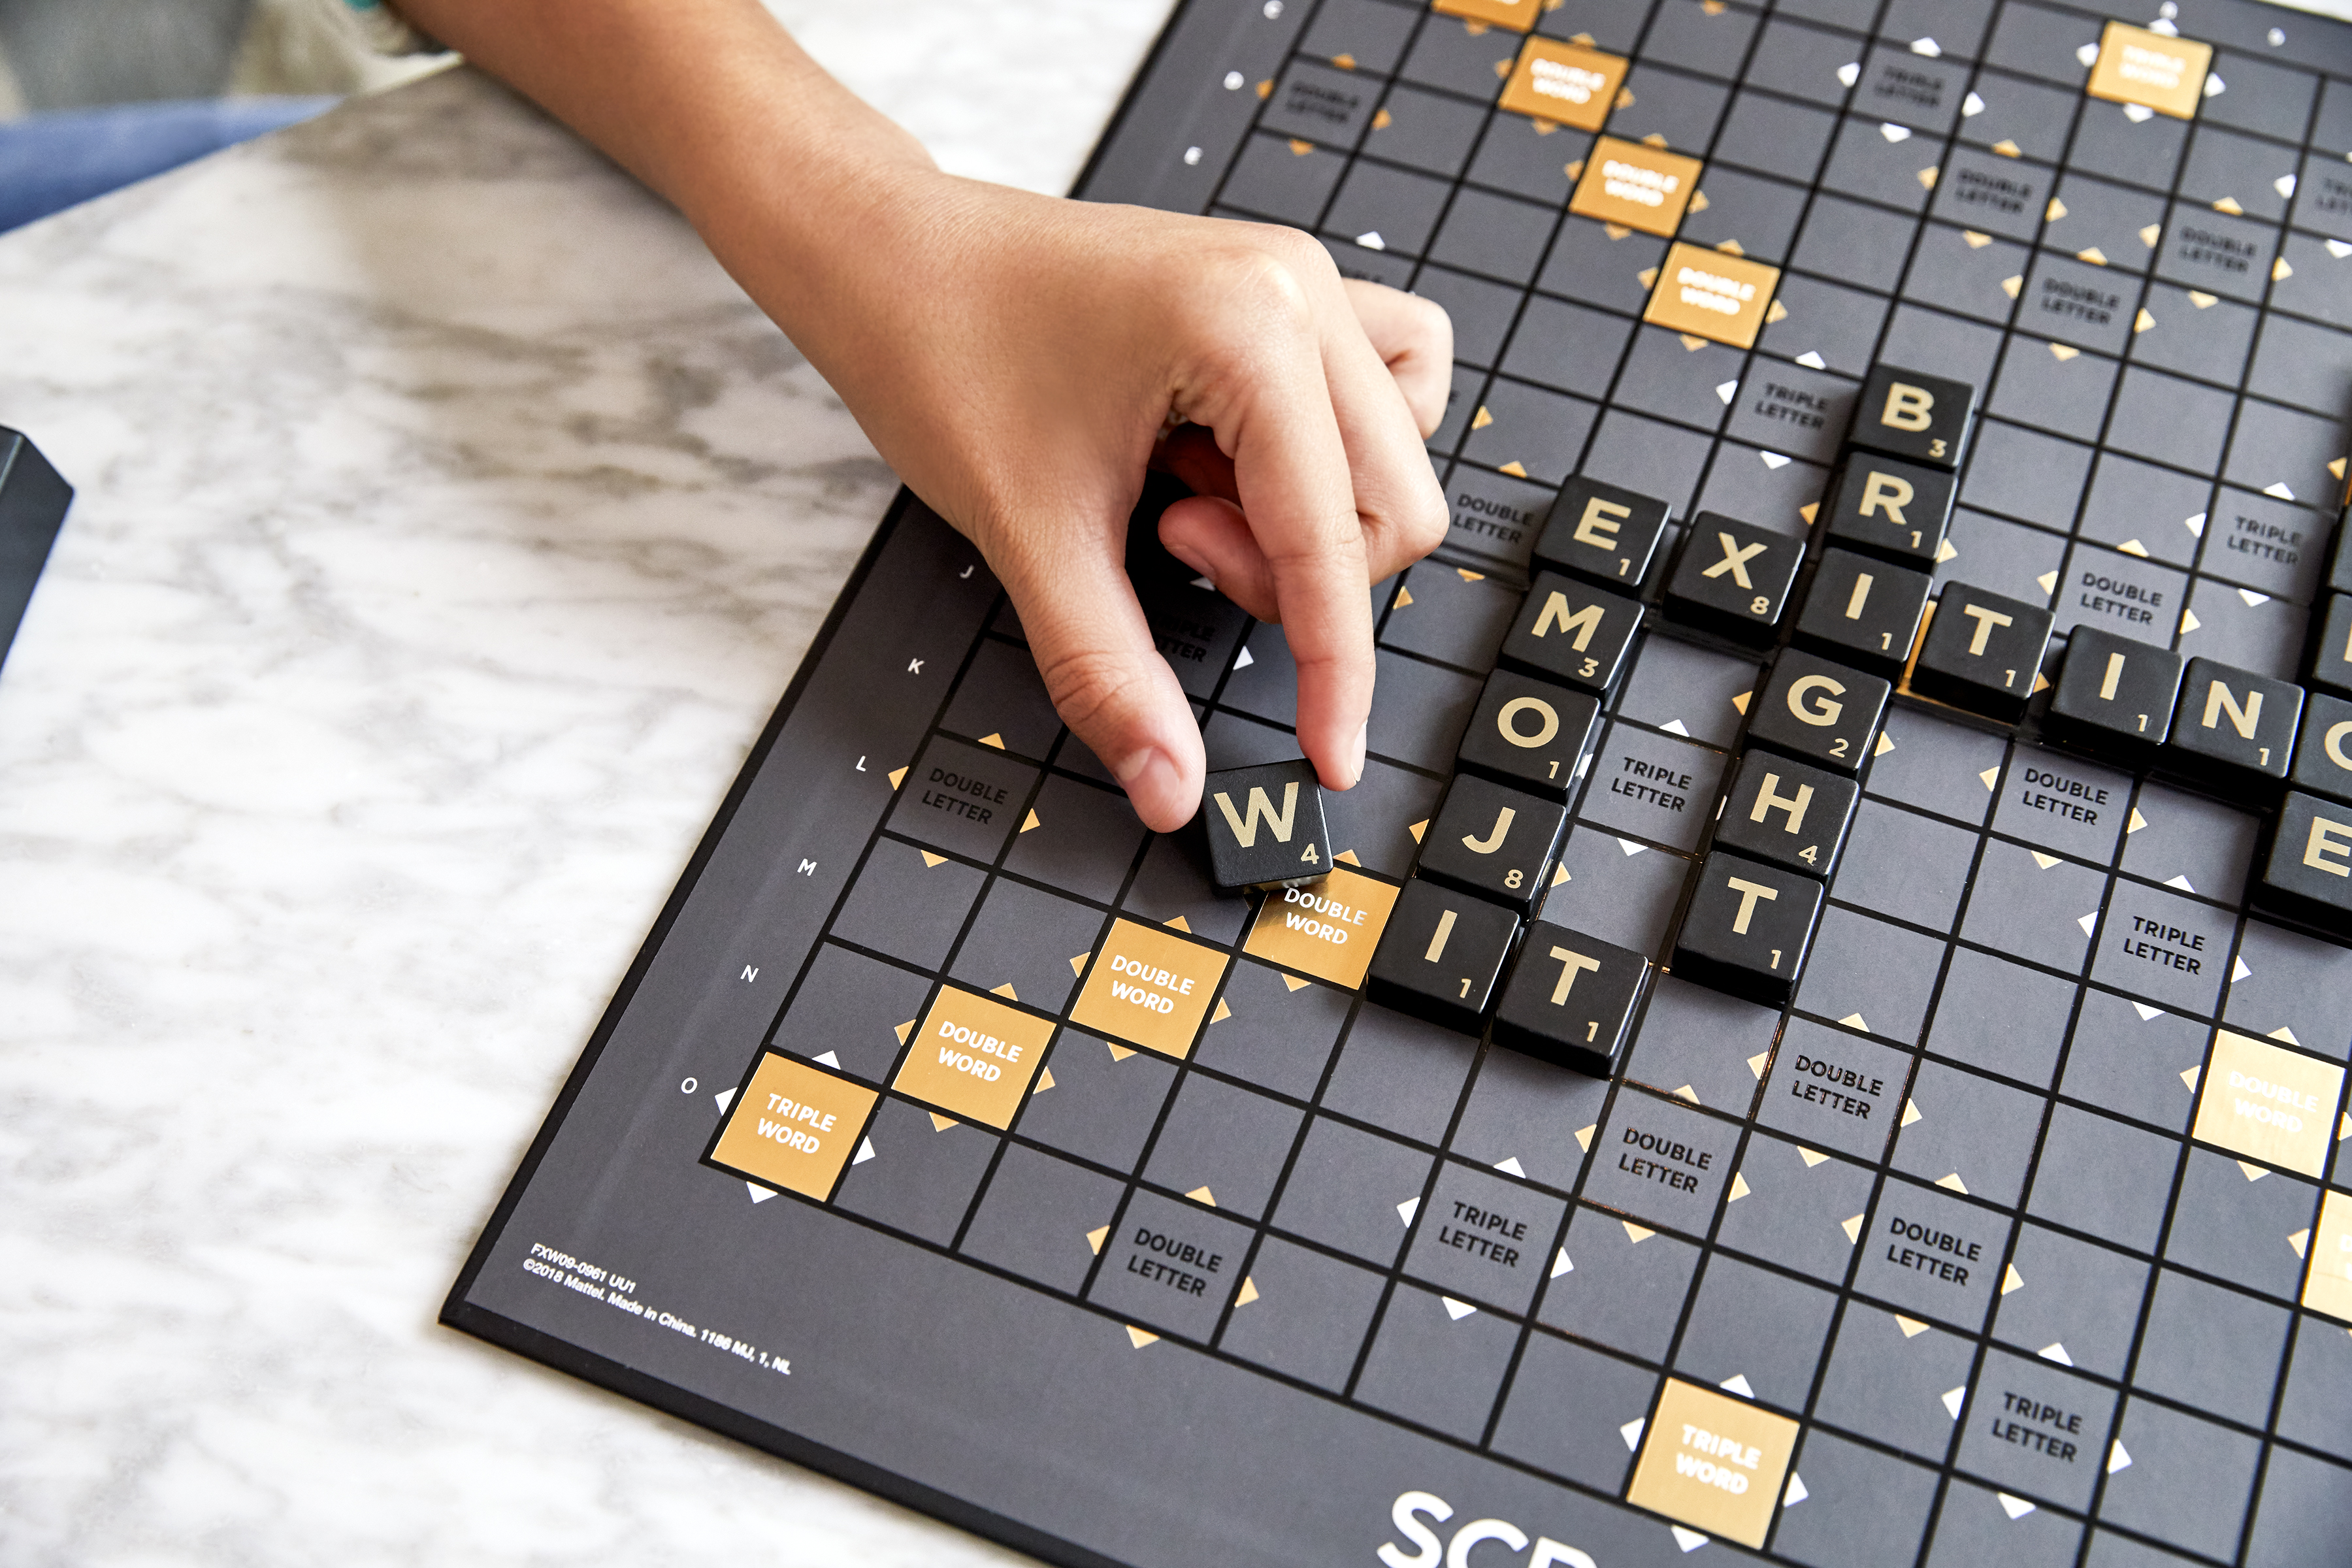 A Scrabble board mid-game